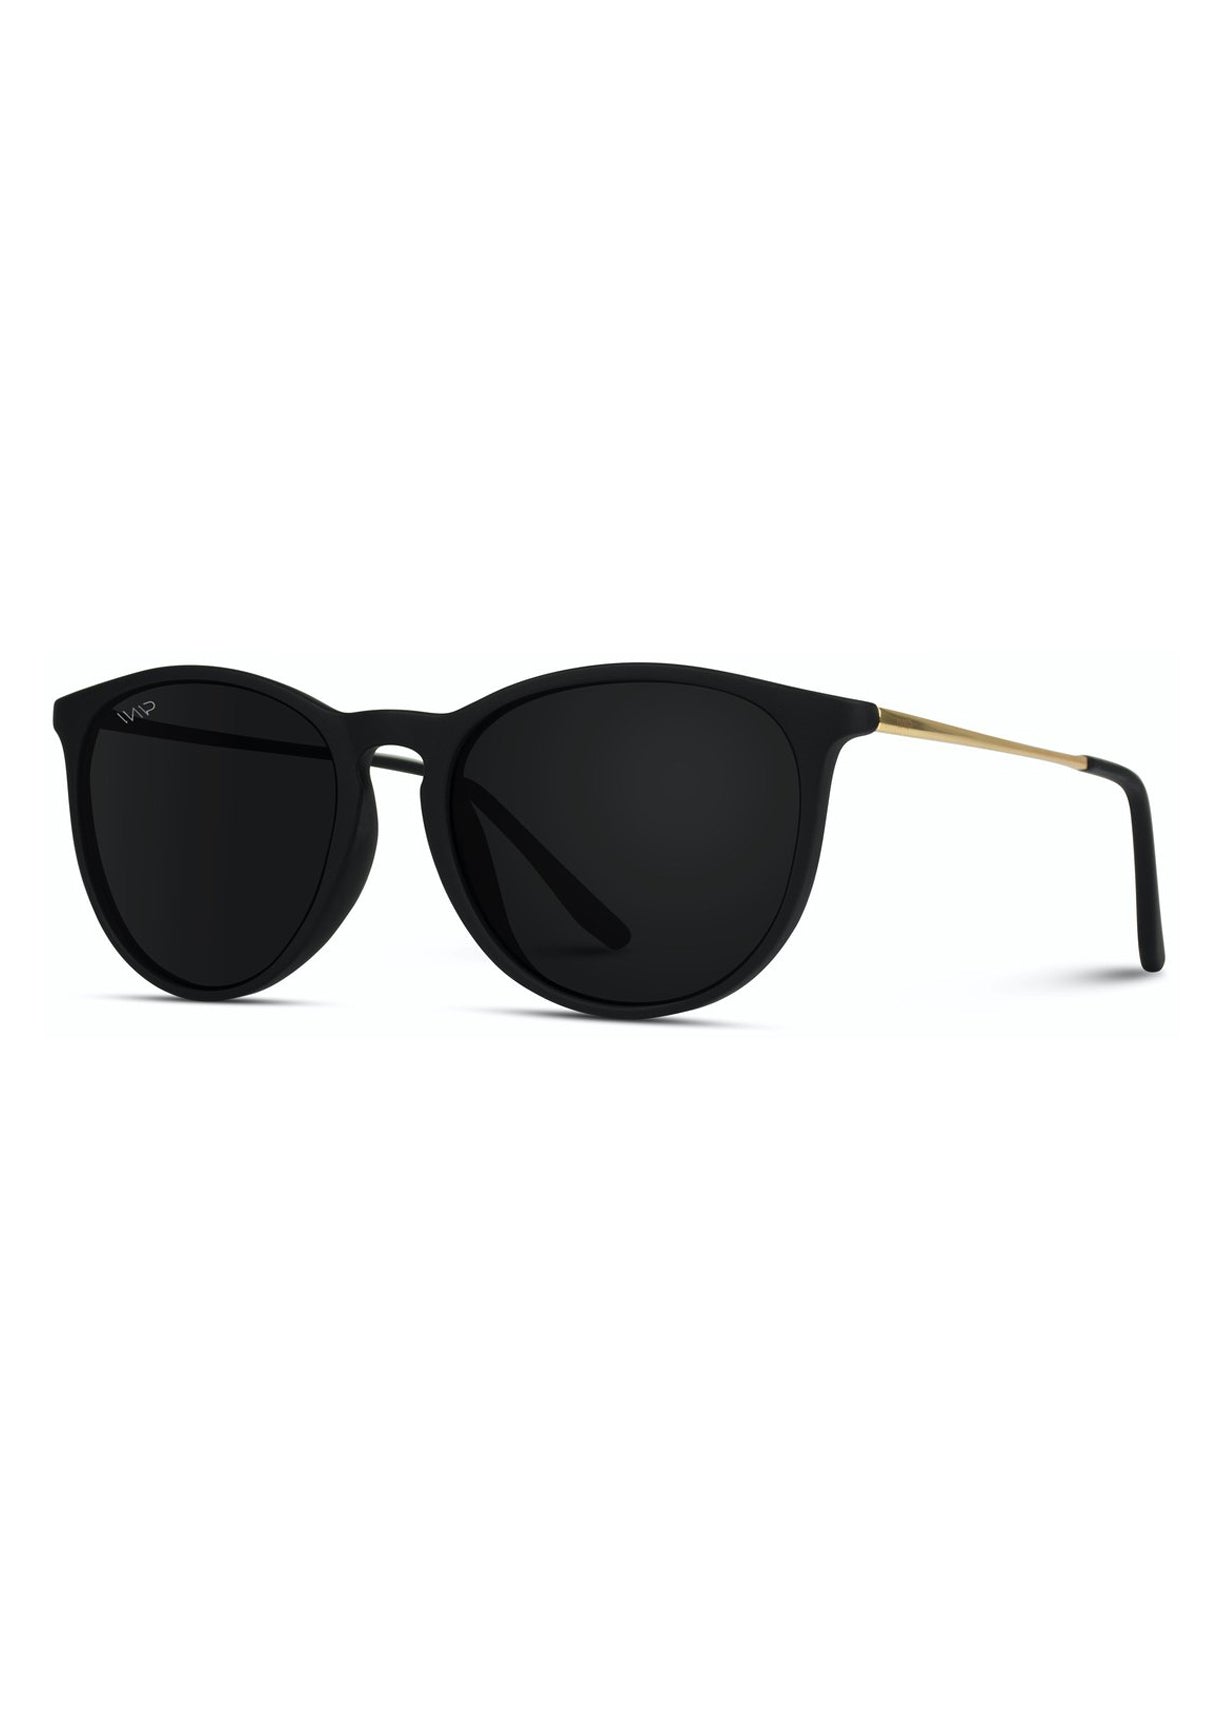 Gold Polarized Round Retro Sunglasses - FINAL SALE Accessories